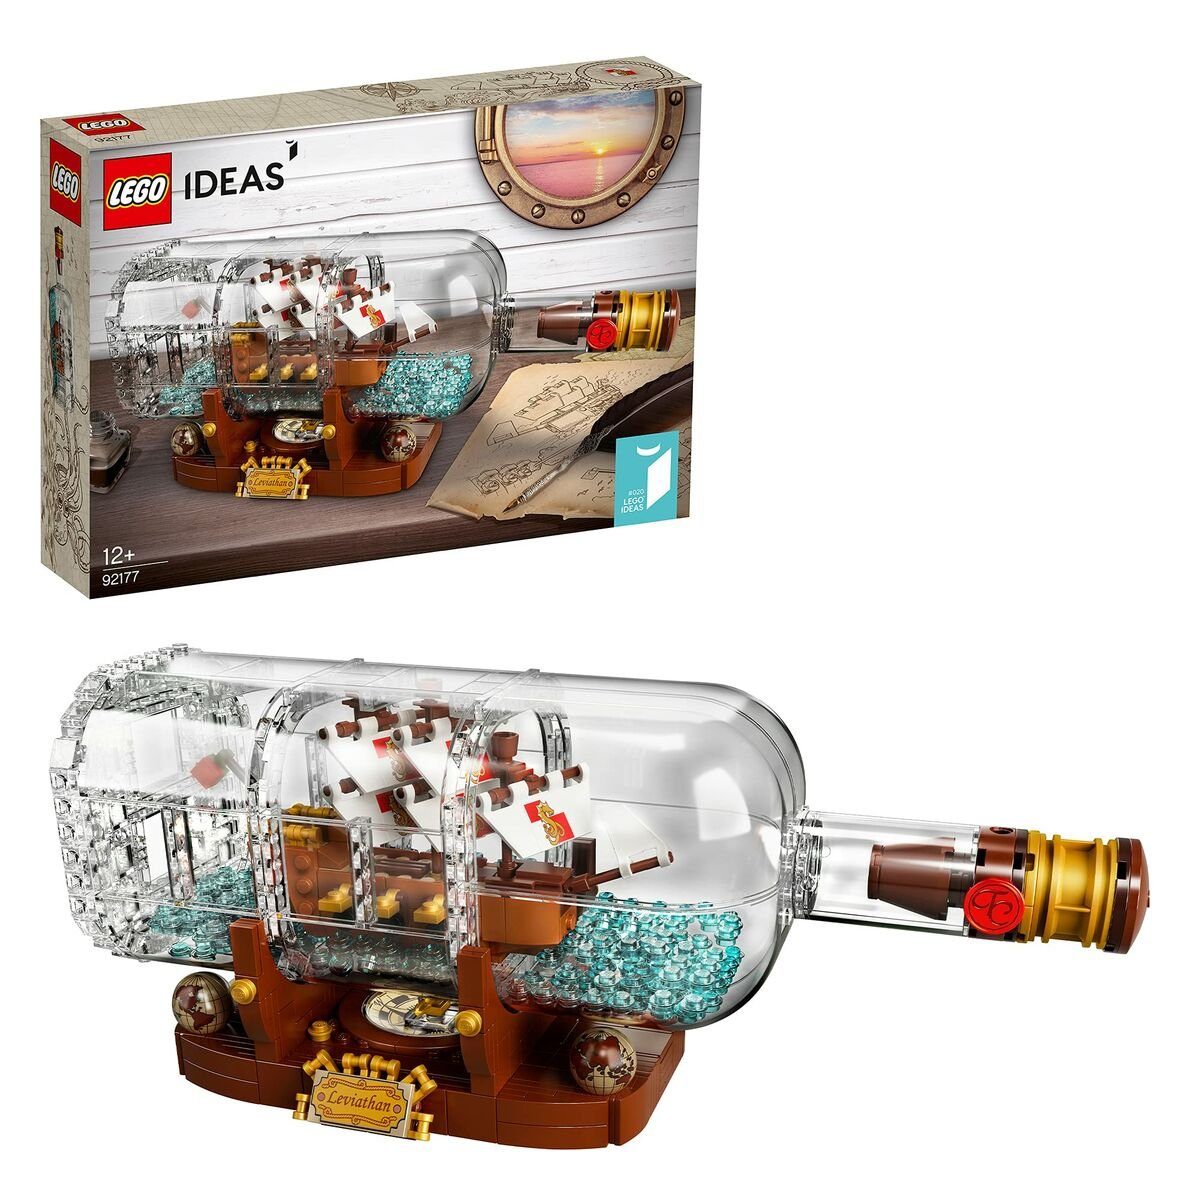 LEGO® Greifspielzeug Playset Lego Ideas: Ship in a Bottle 92177 962 Stücke 31 x 10 x 10 cm